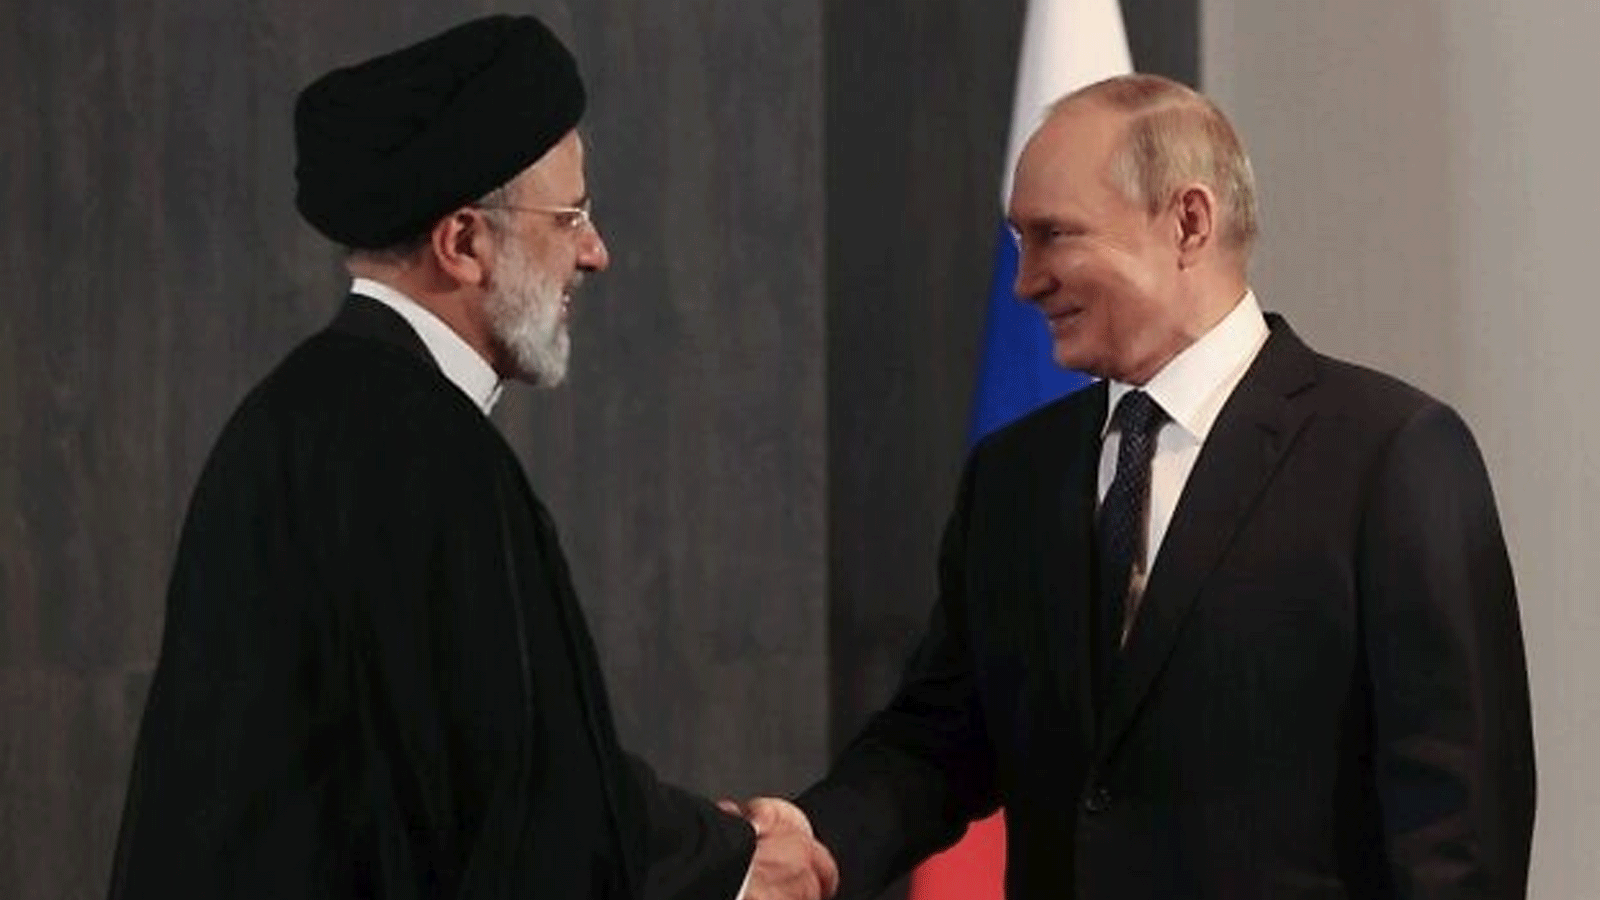 صورة أرشيفية للرئيسين الروسي فلاديمير بوتين والإيراني ابراهيم رئيسي